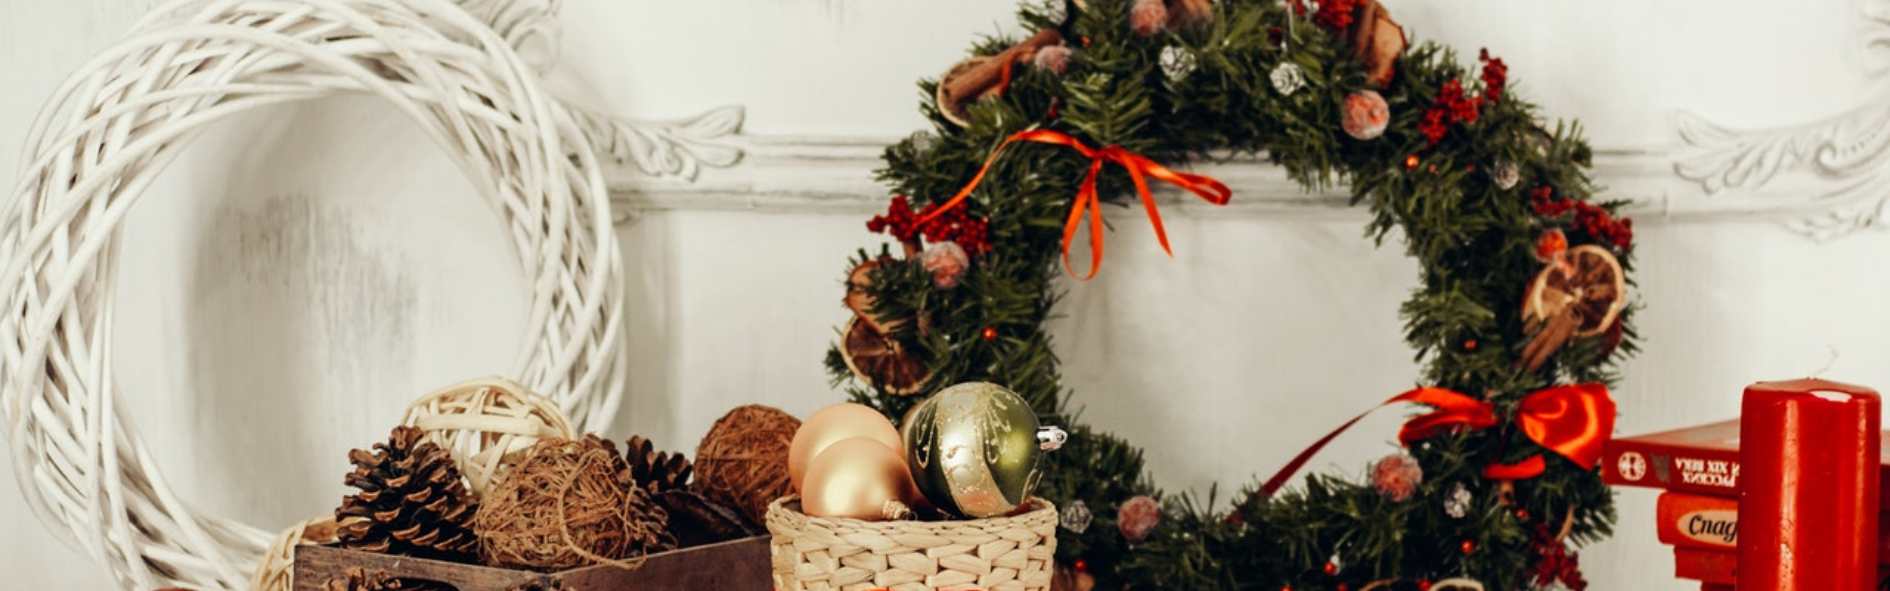 Descubre los adornos navideños caseros que puedes hacer con materiales reciclados y en familia